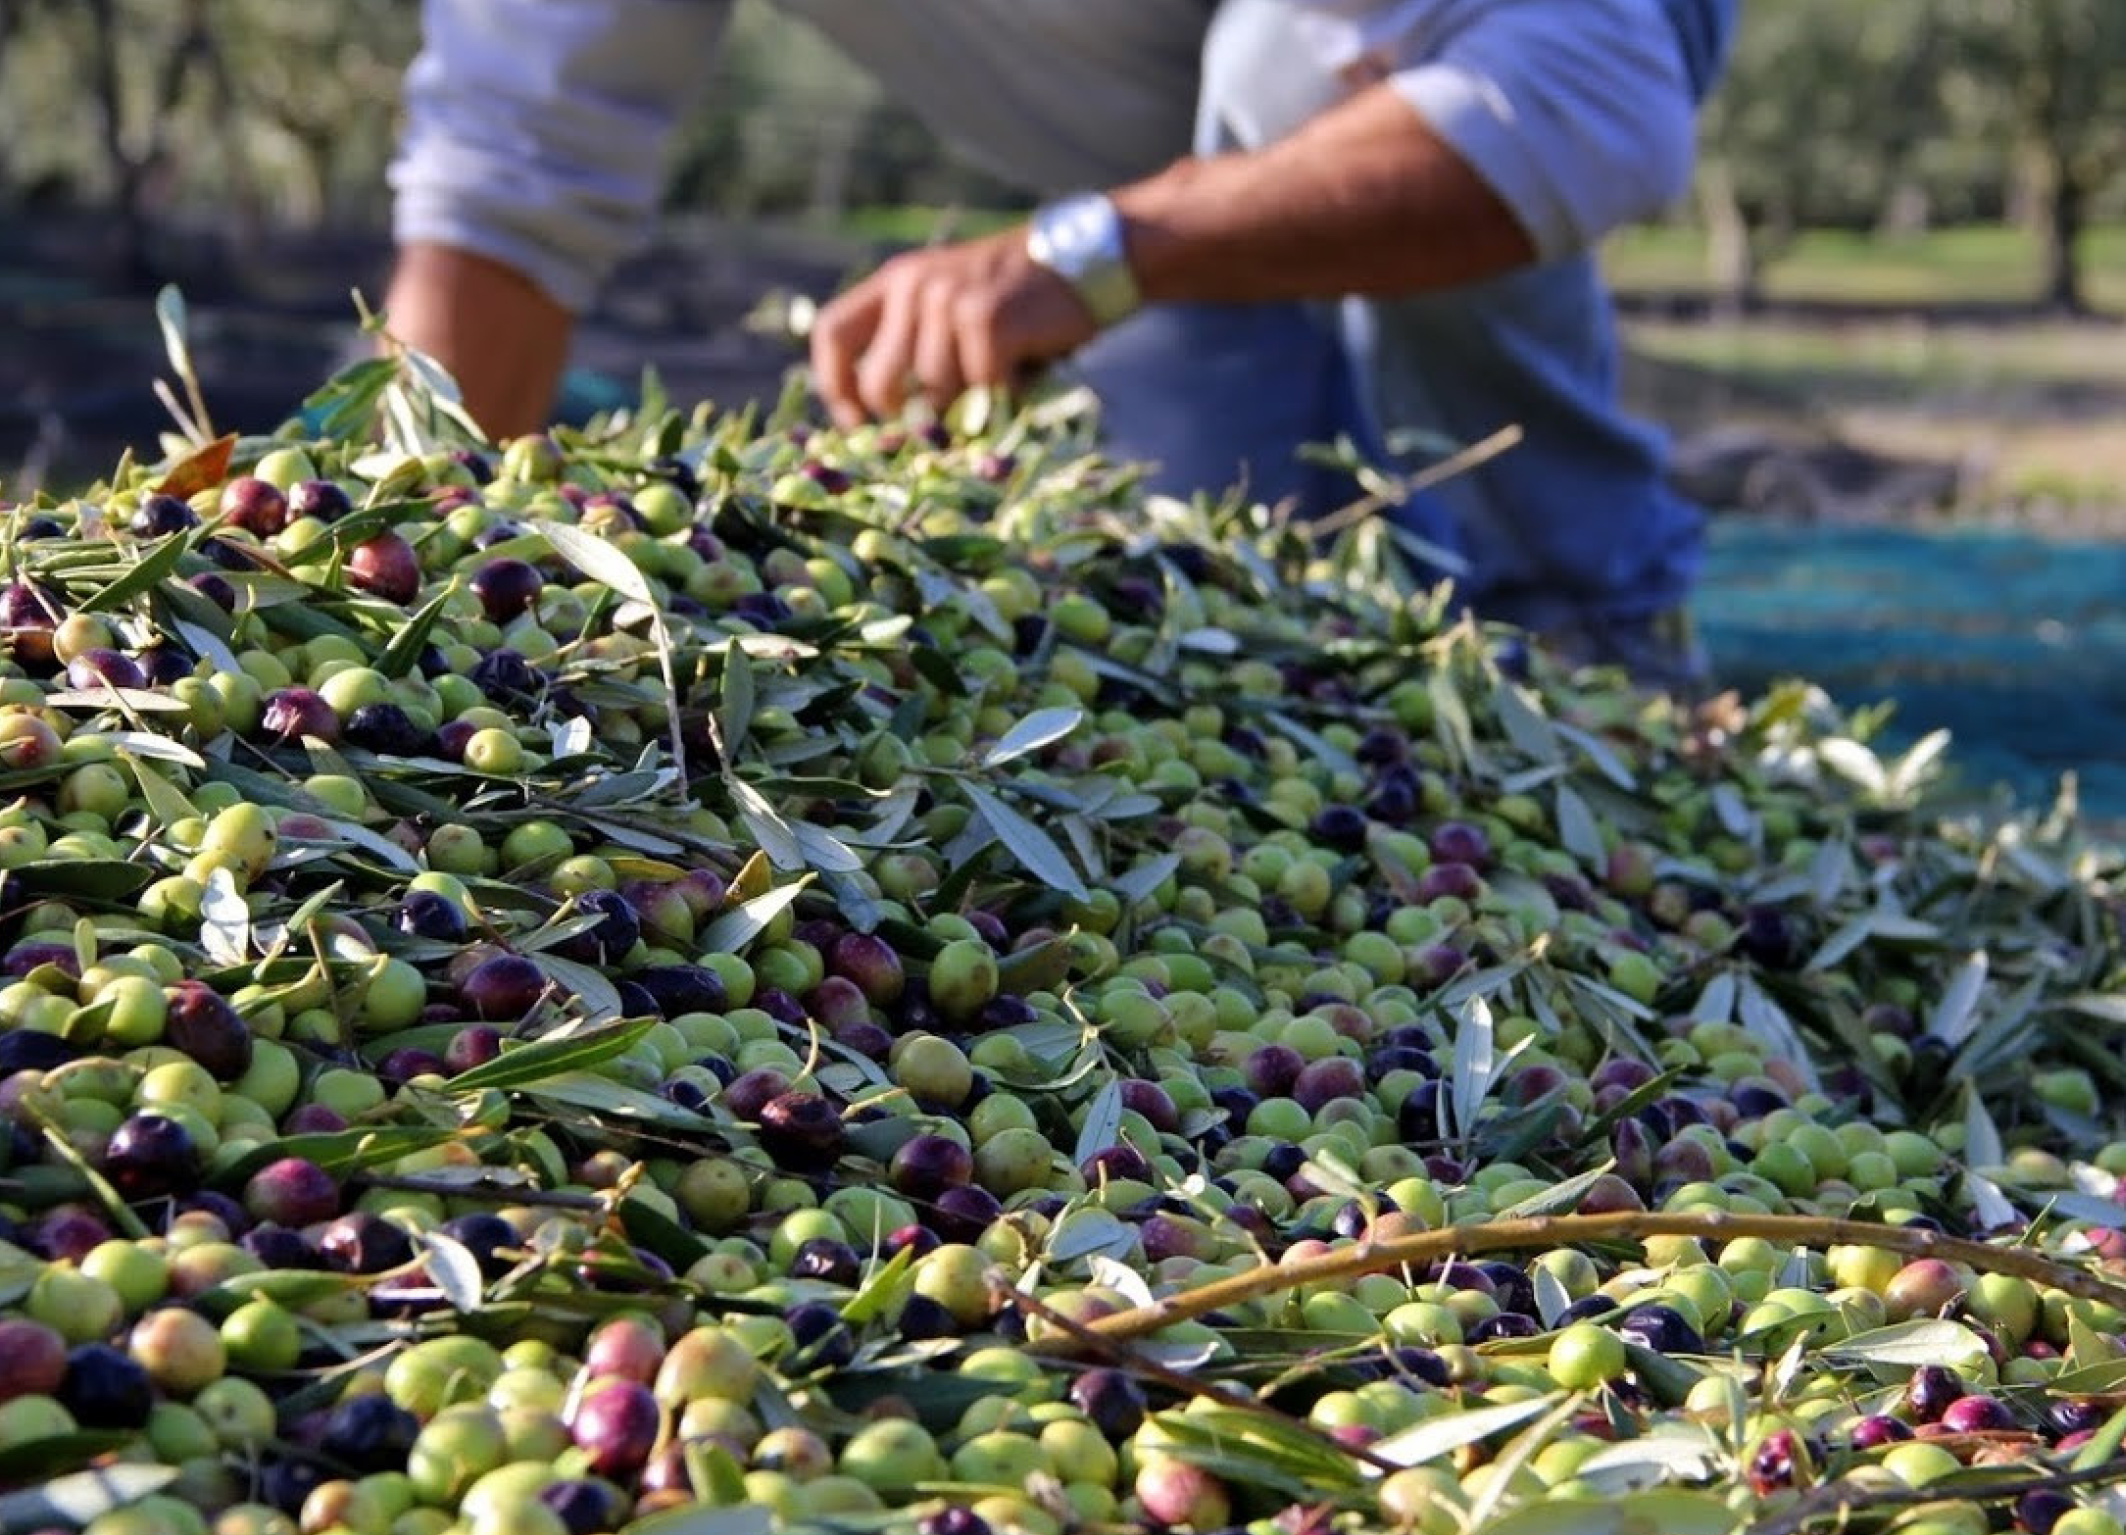 Huile d'olive : Le gouvernement interdit provisoirement l'exportation